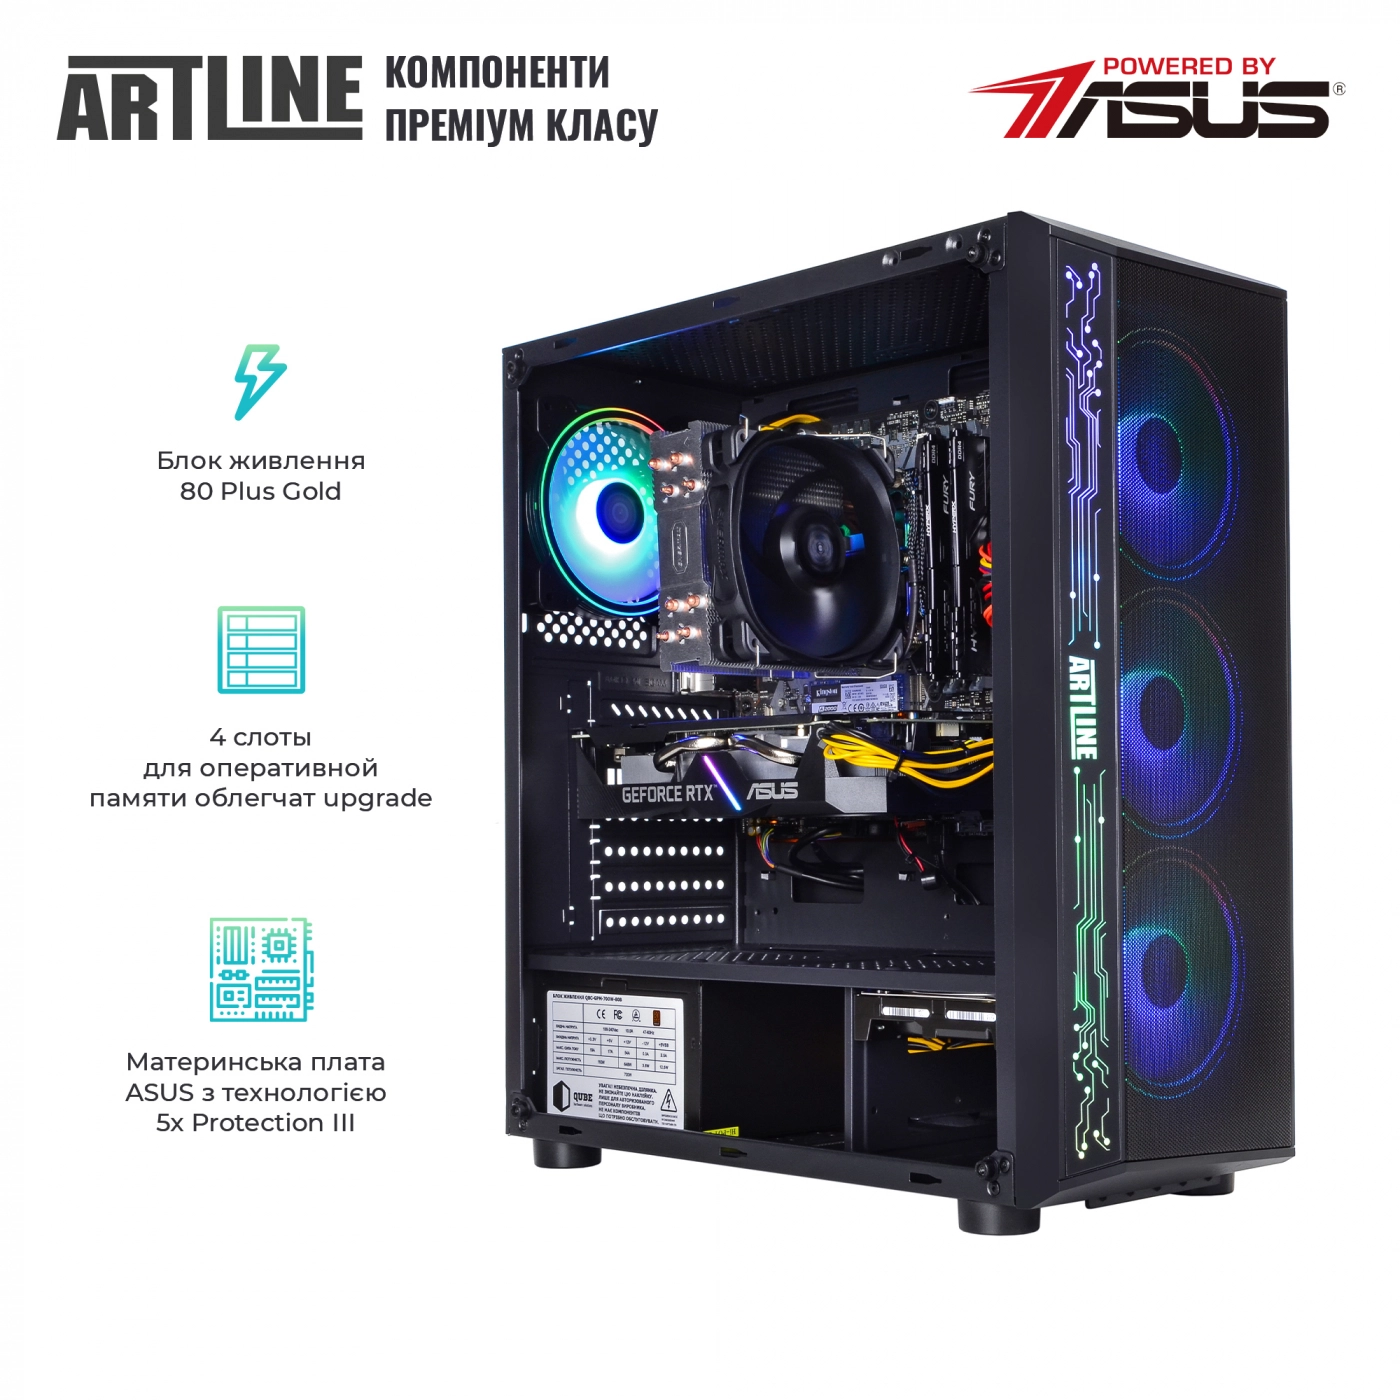 Купить Компьютер ARTLINE Gaming X83v03 - фото 2